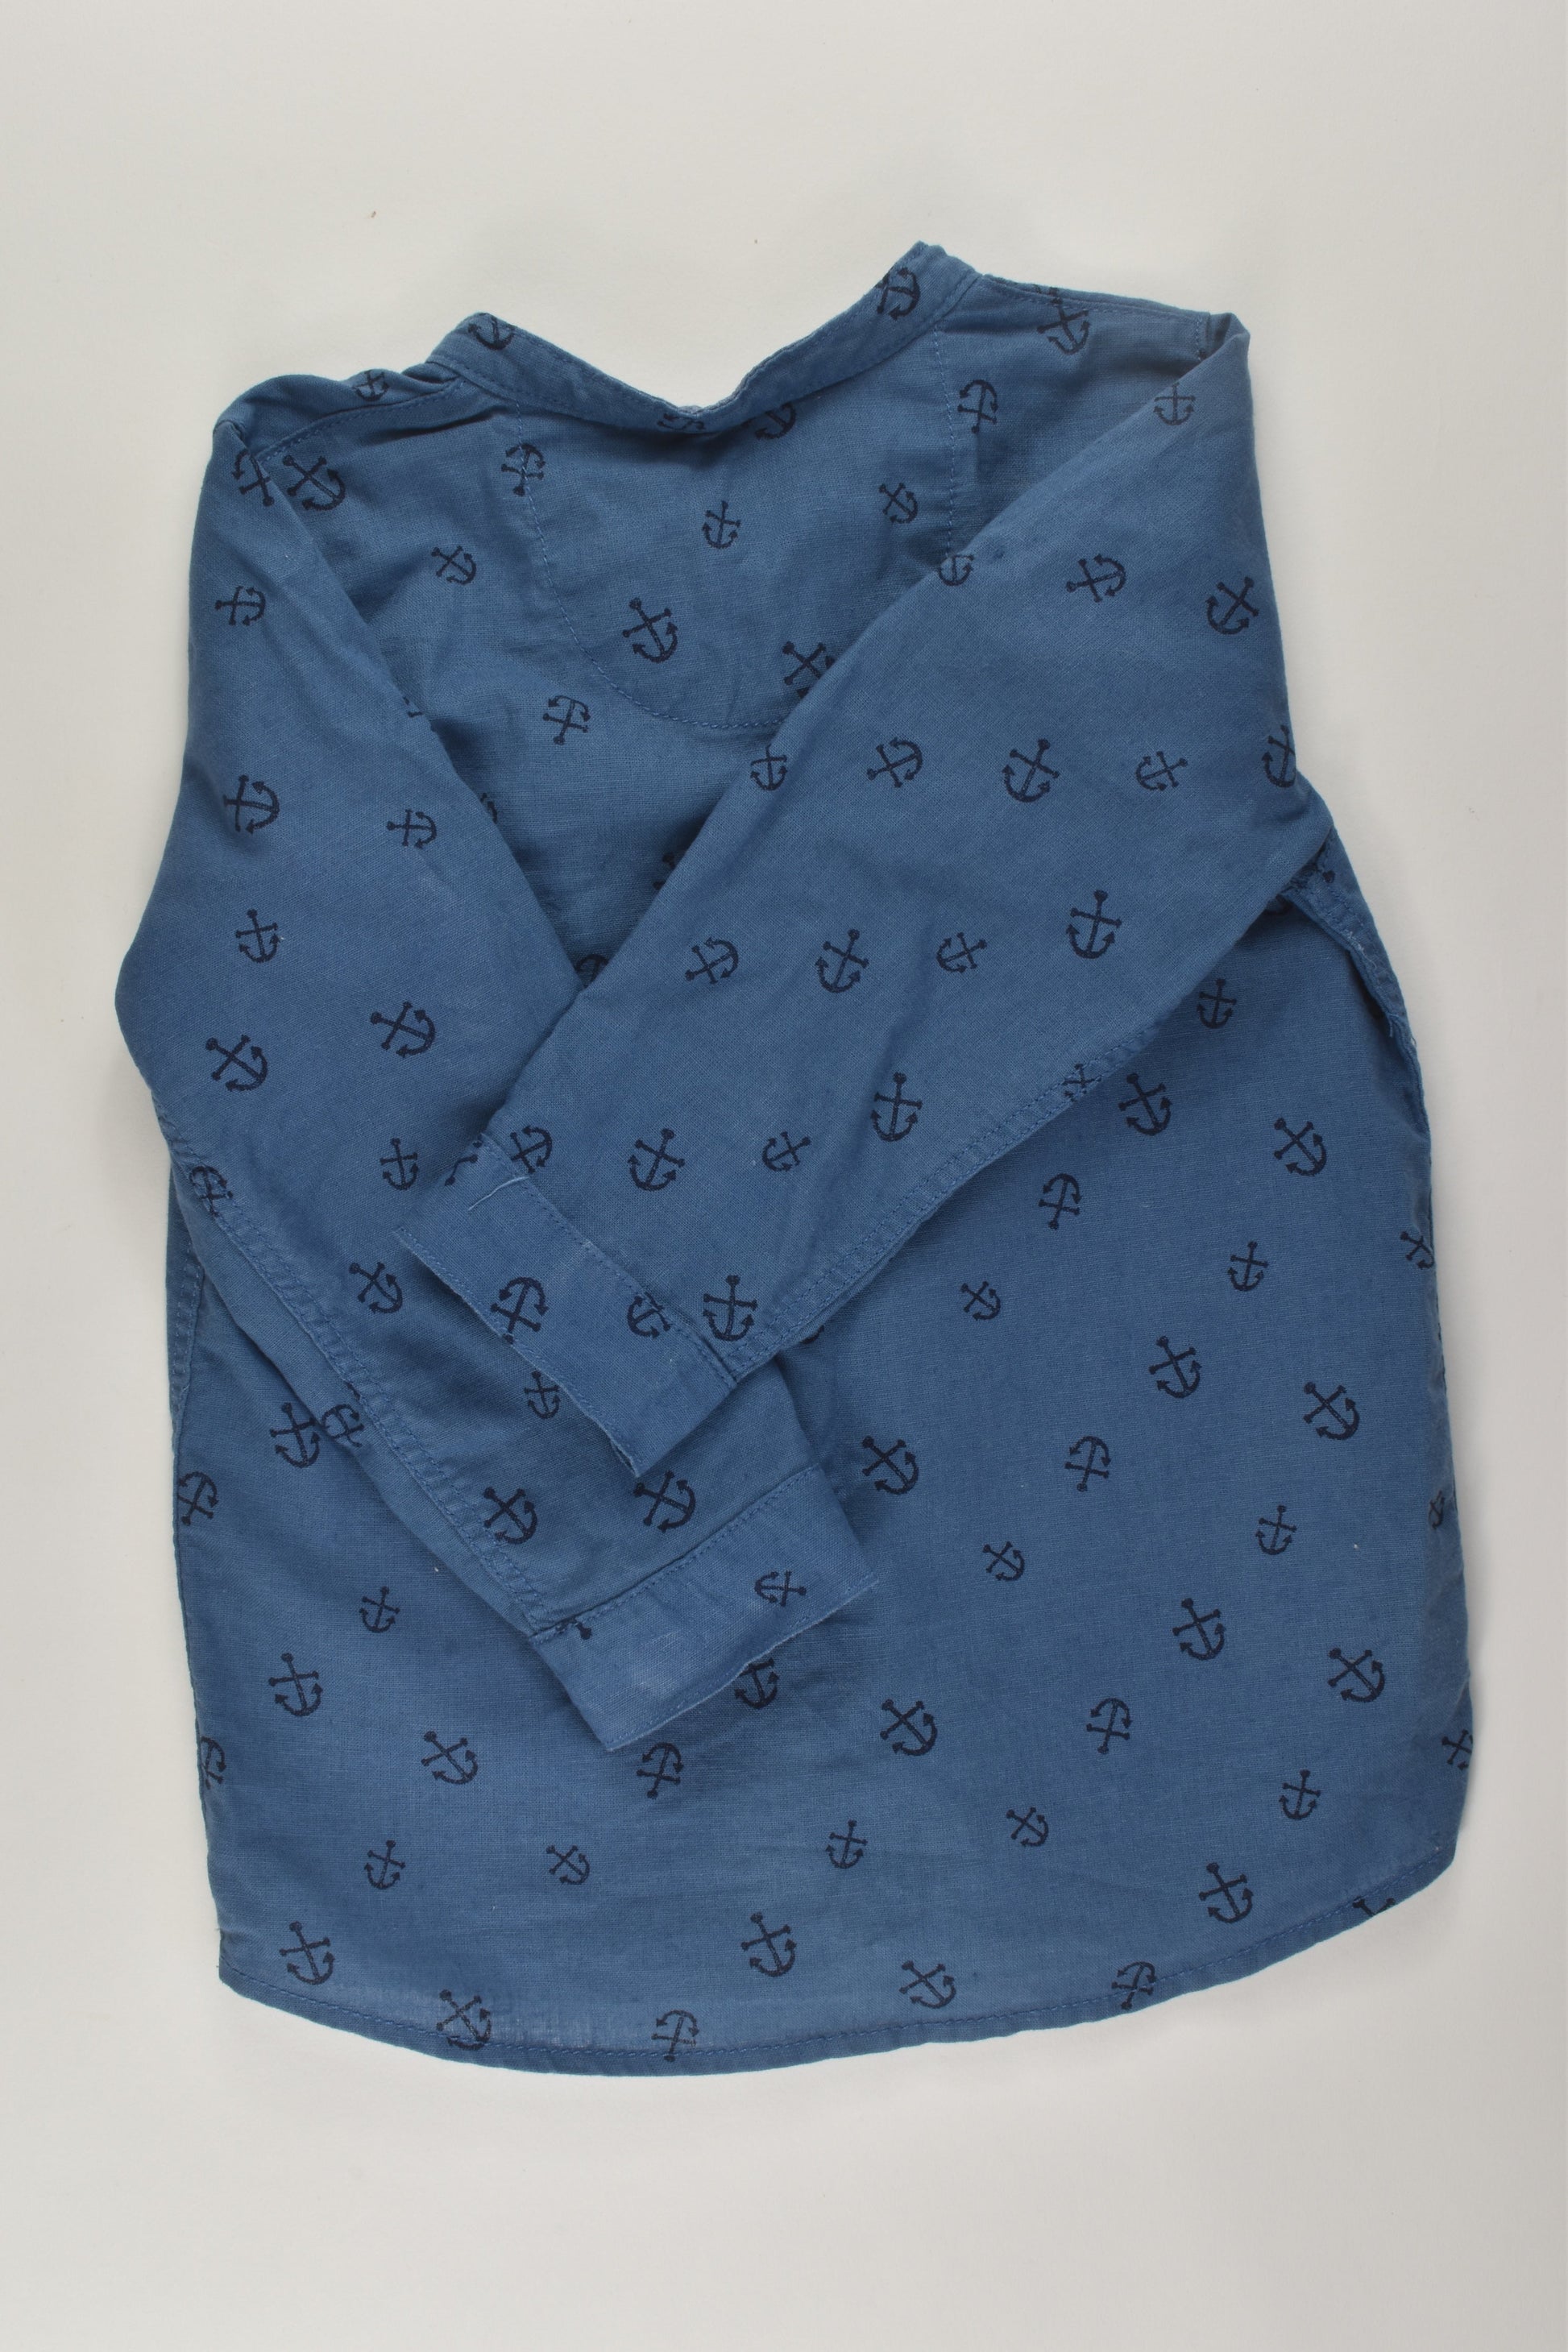 H&M Size 3 Nautical Linen Blend Shirt